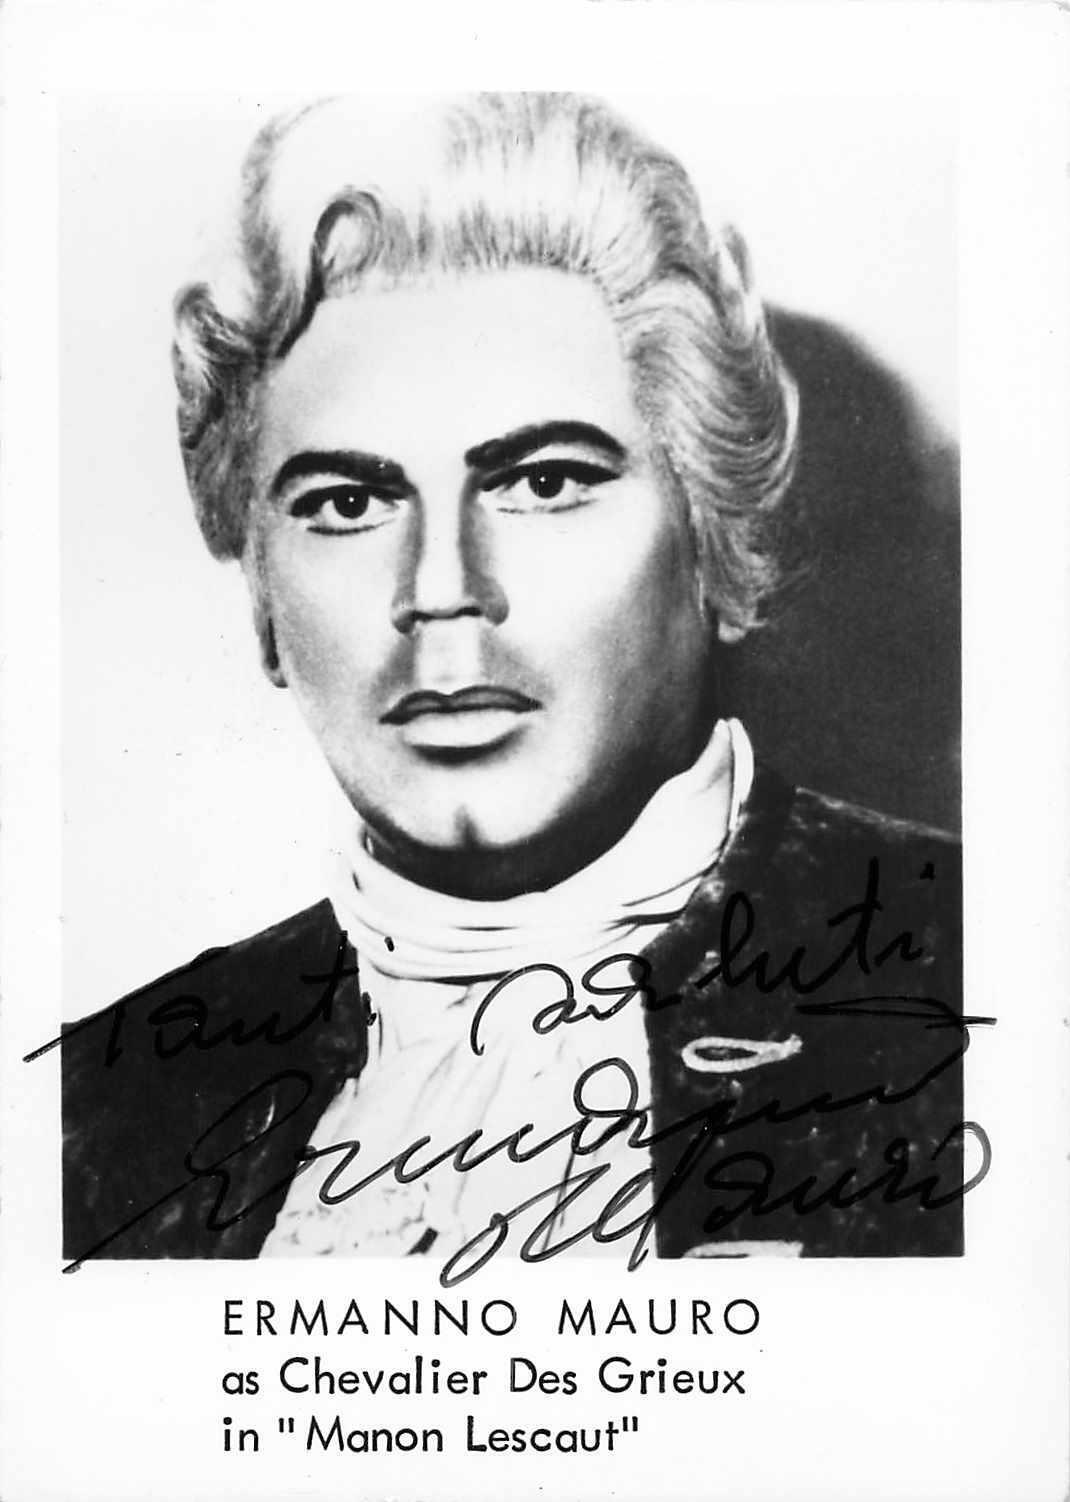 Ermanno Mauro Opera Singer Signed Photo Auto Manon Lescaut 1986 autograph Rare